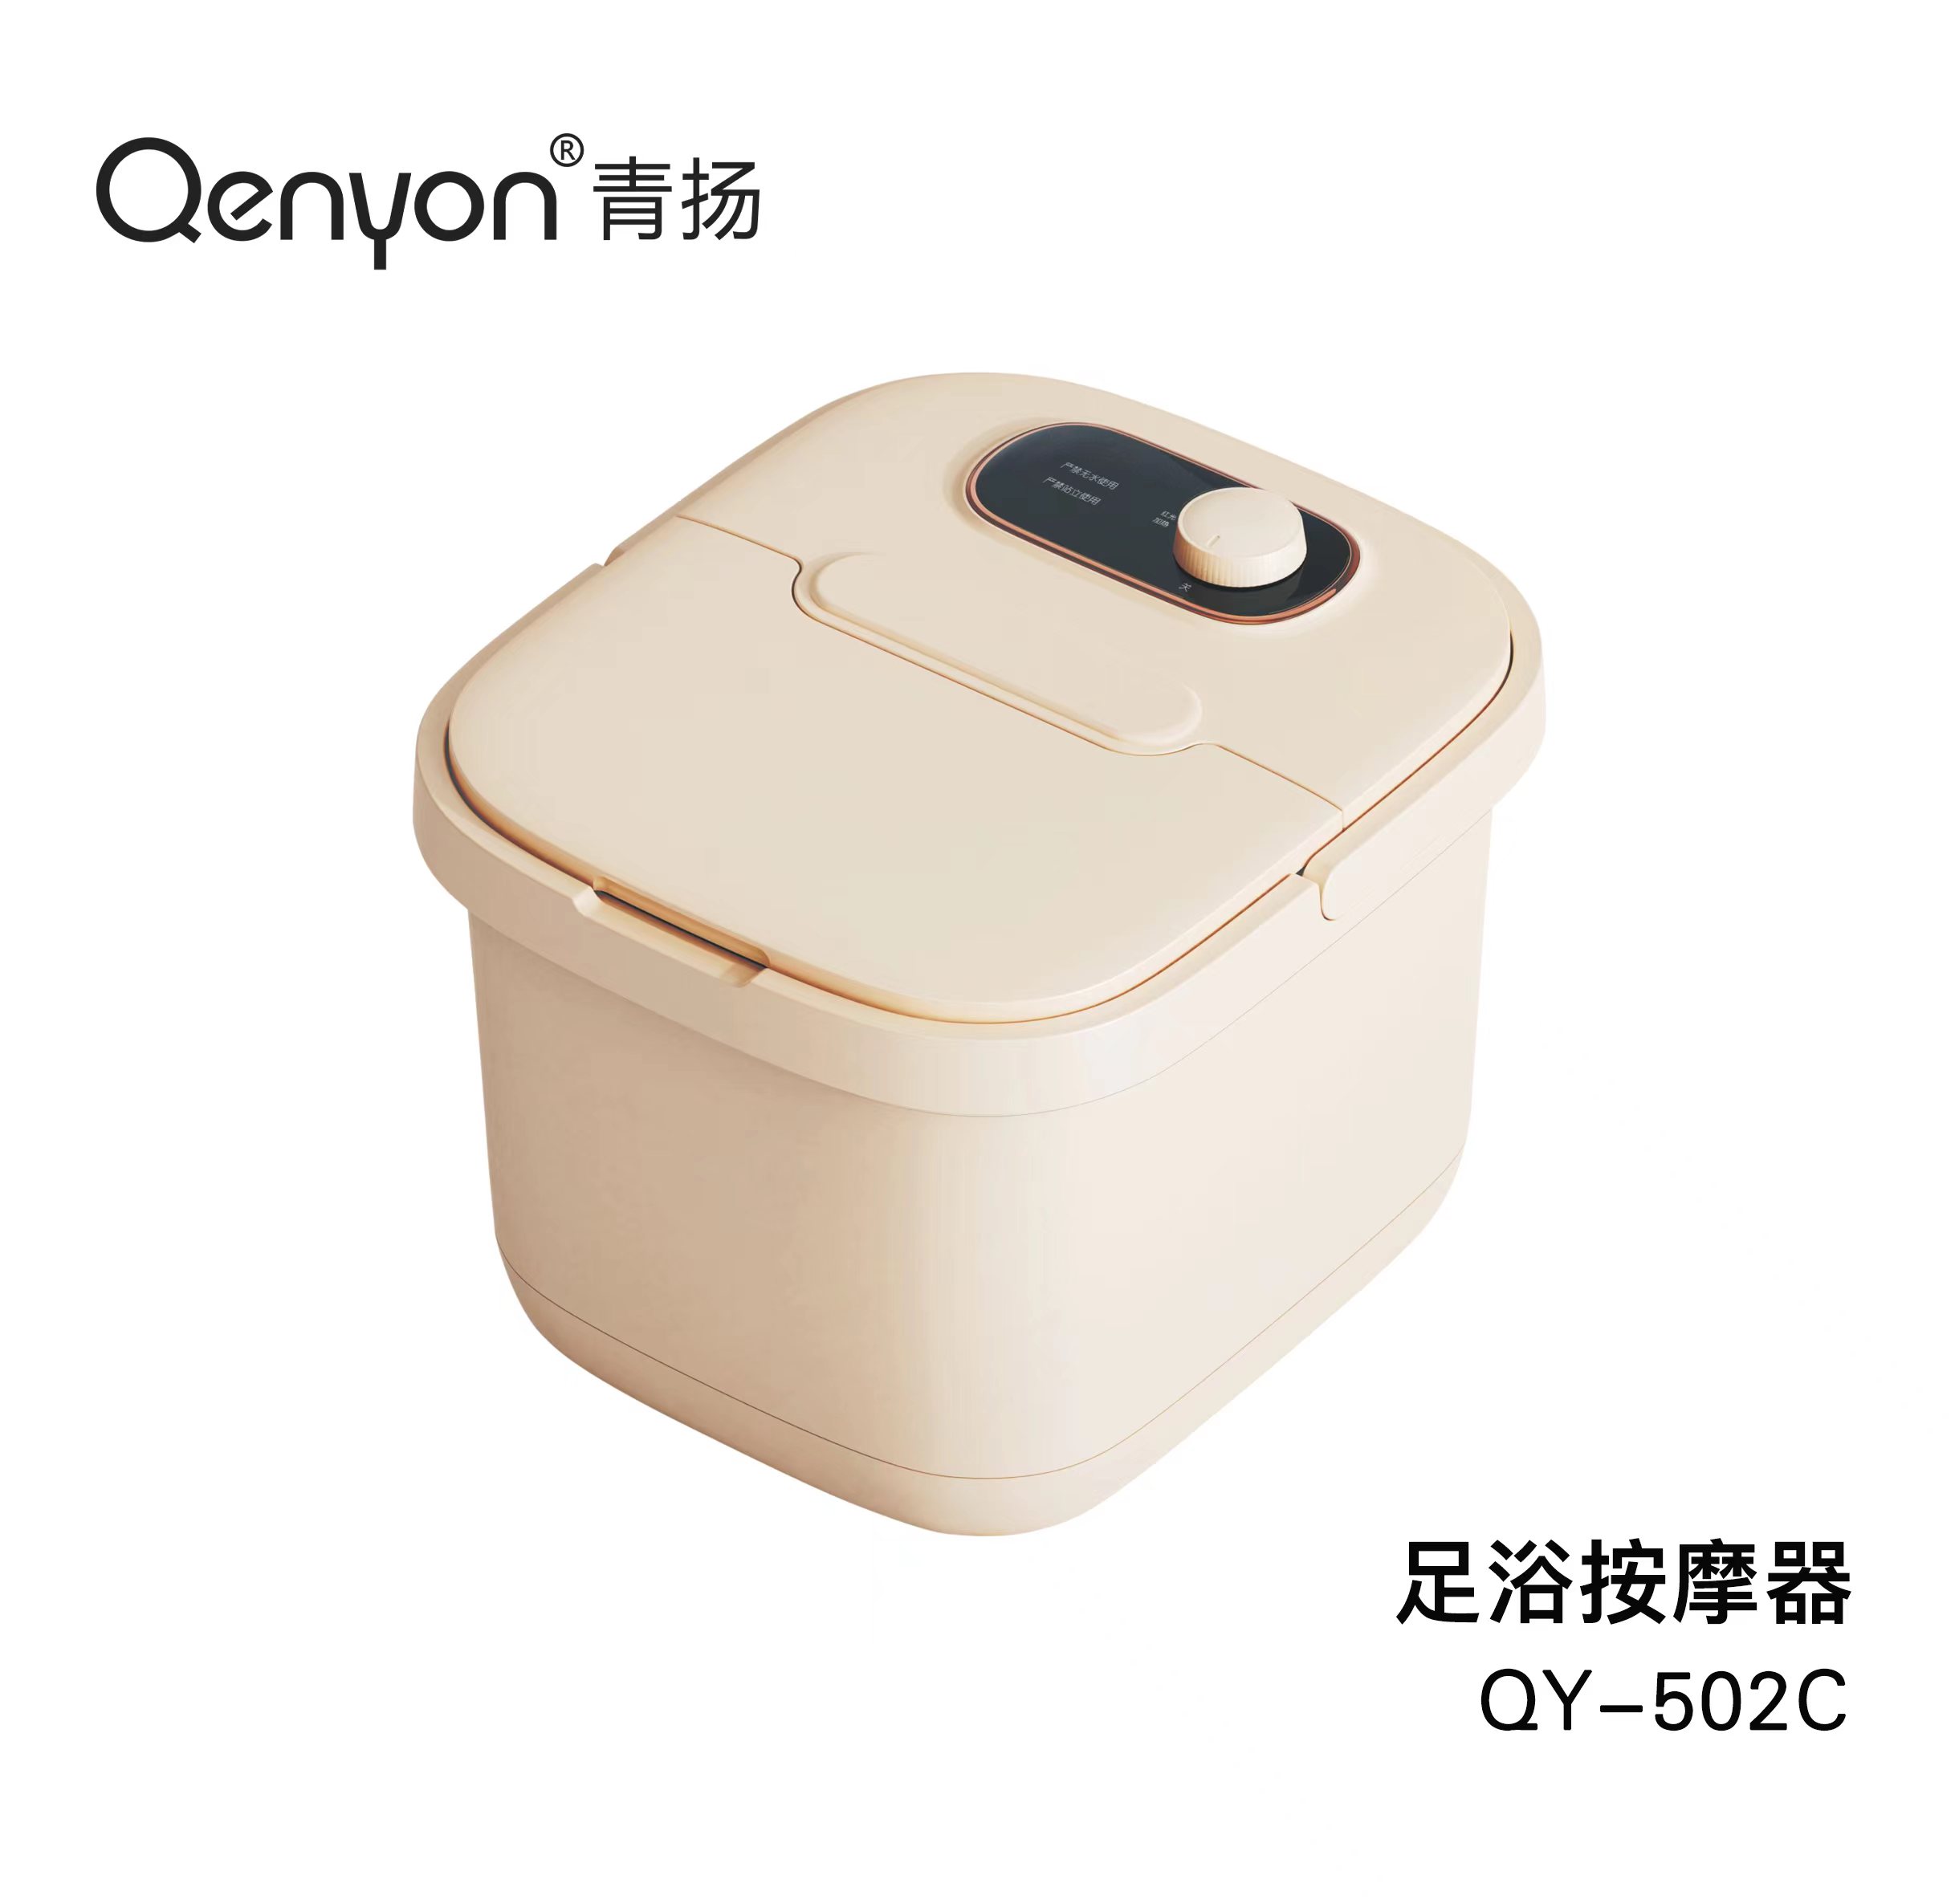 青扬足浴按摩器QY-502C